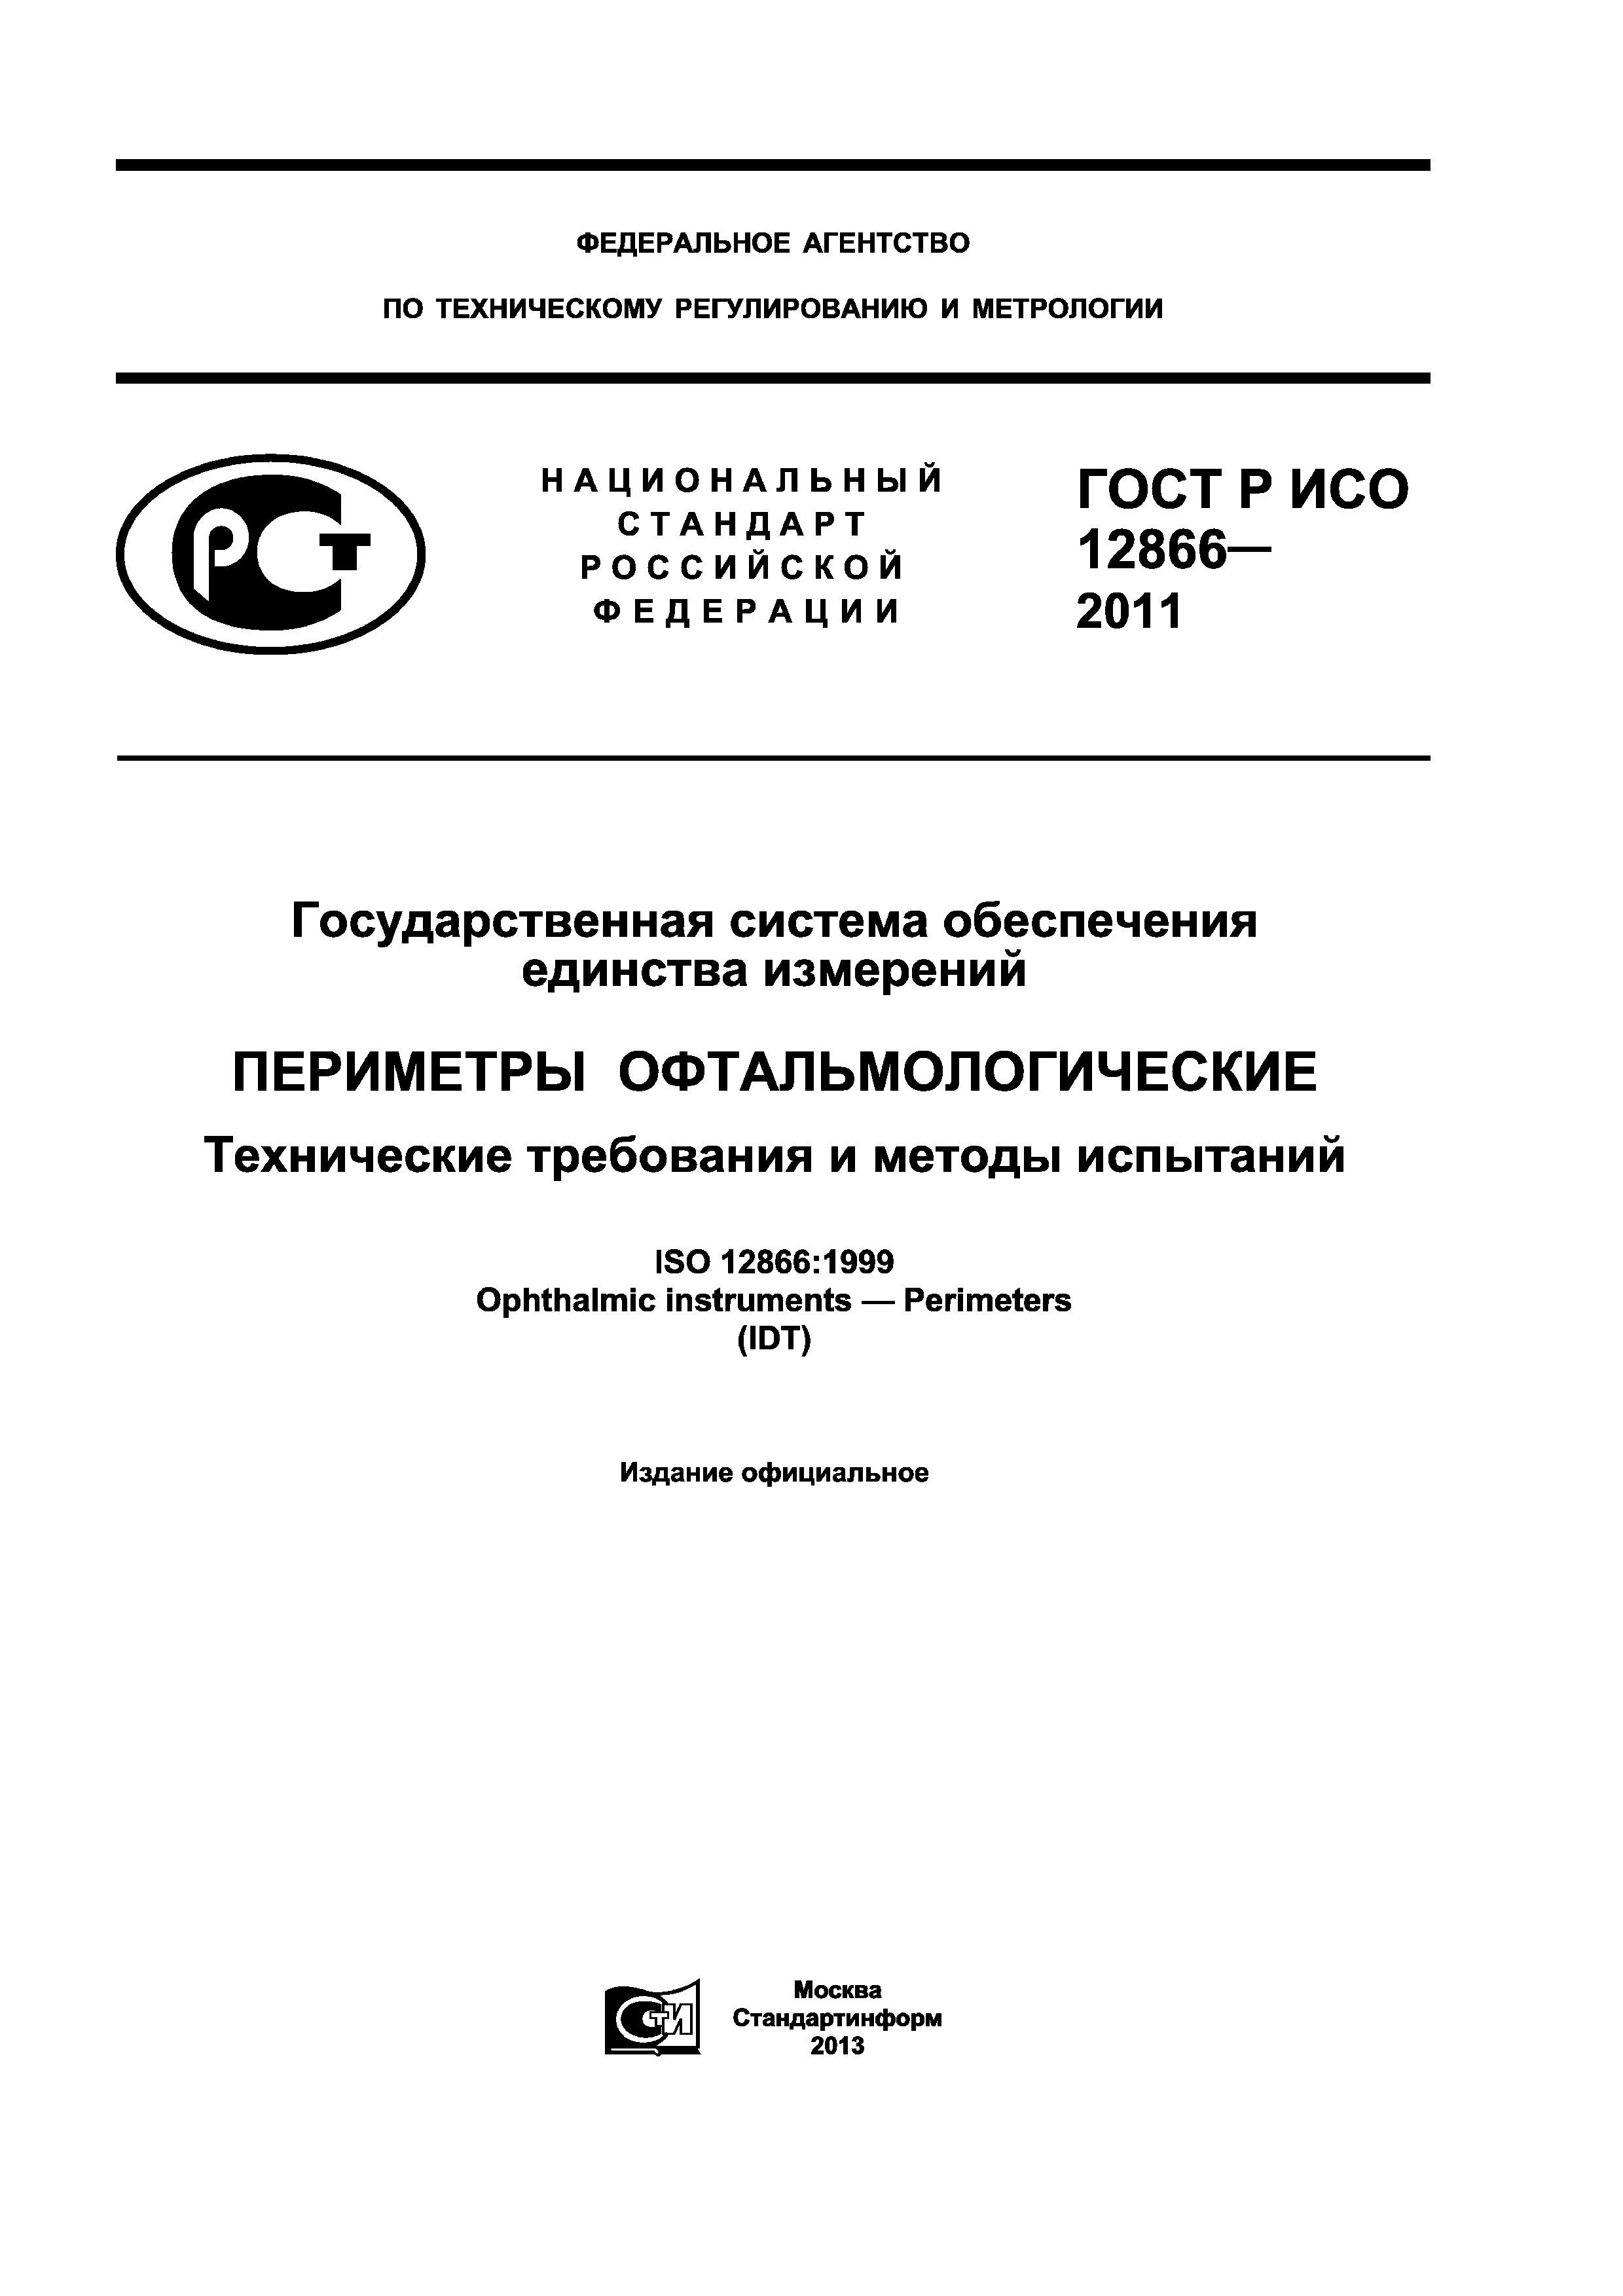 ГОСТ Р ИСО 12866-2011